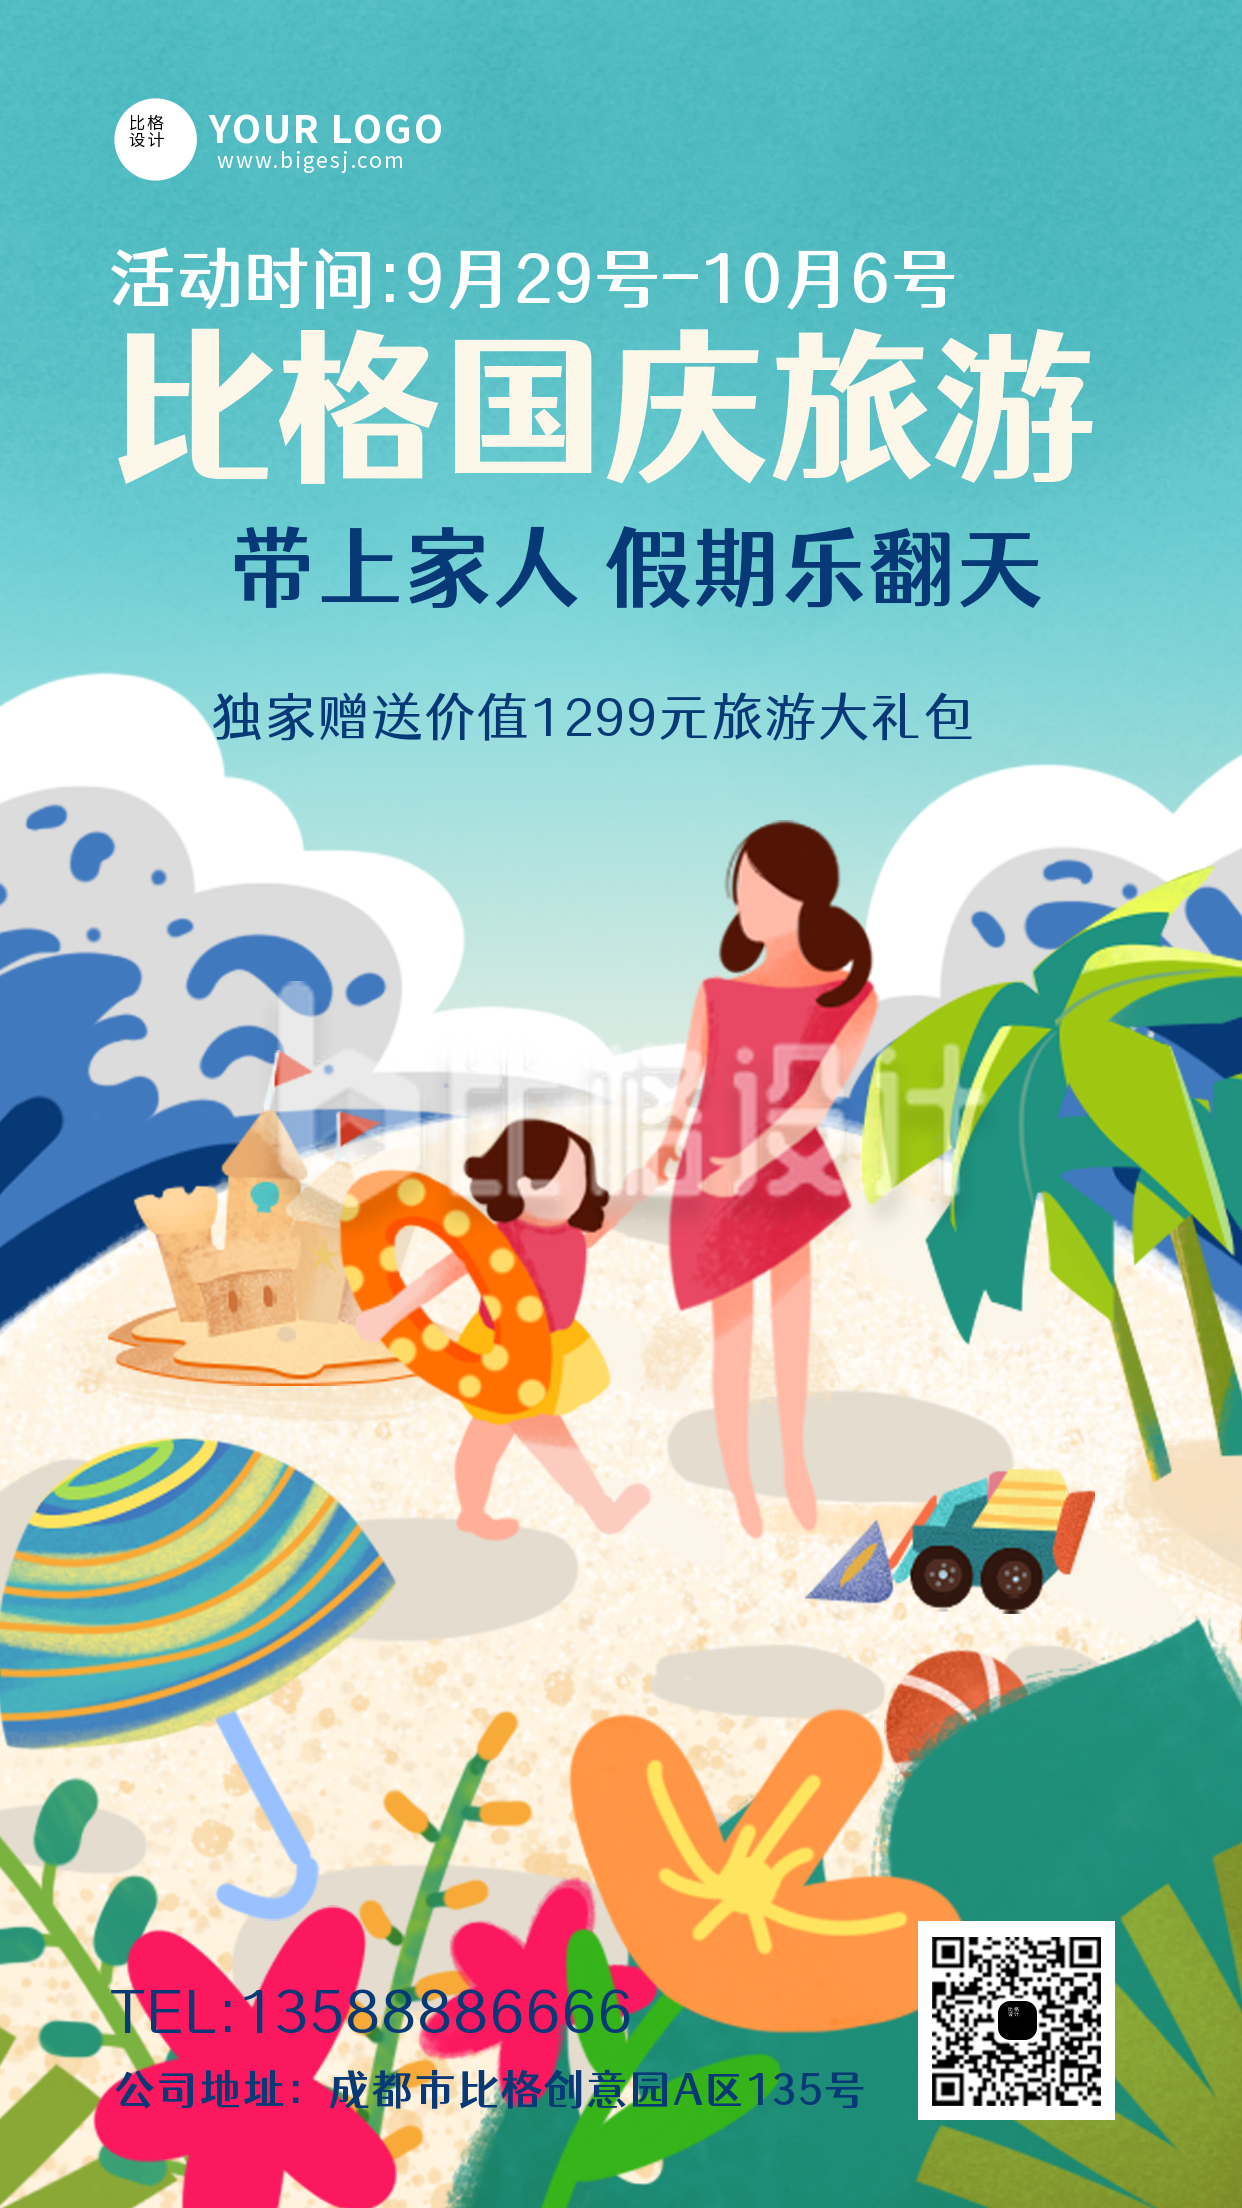 国庆假期旅游出行活动手机海报